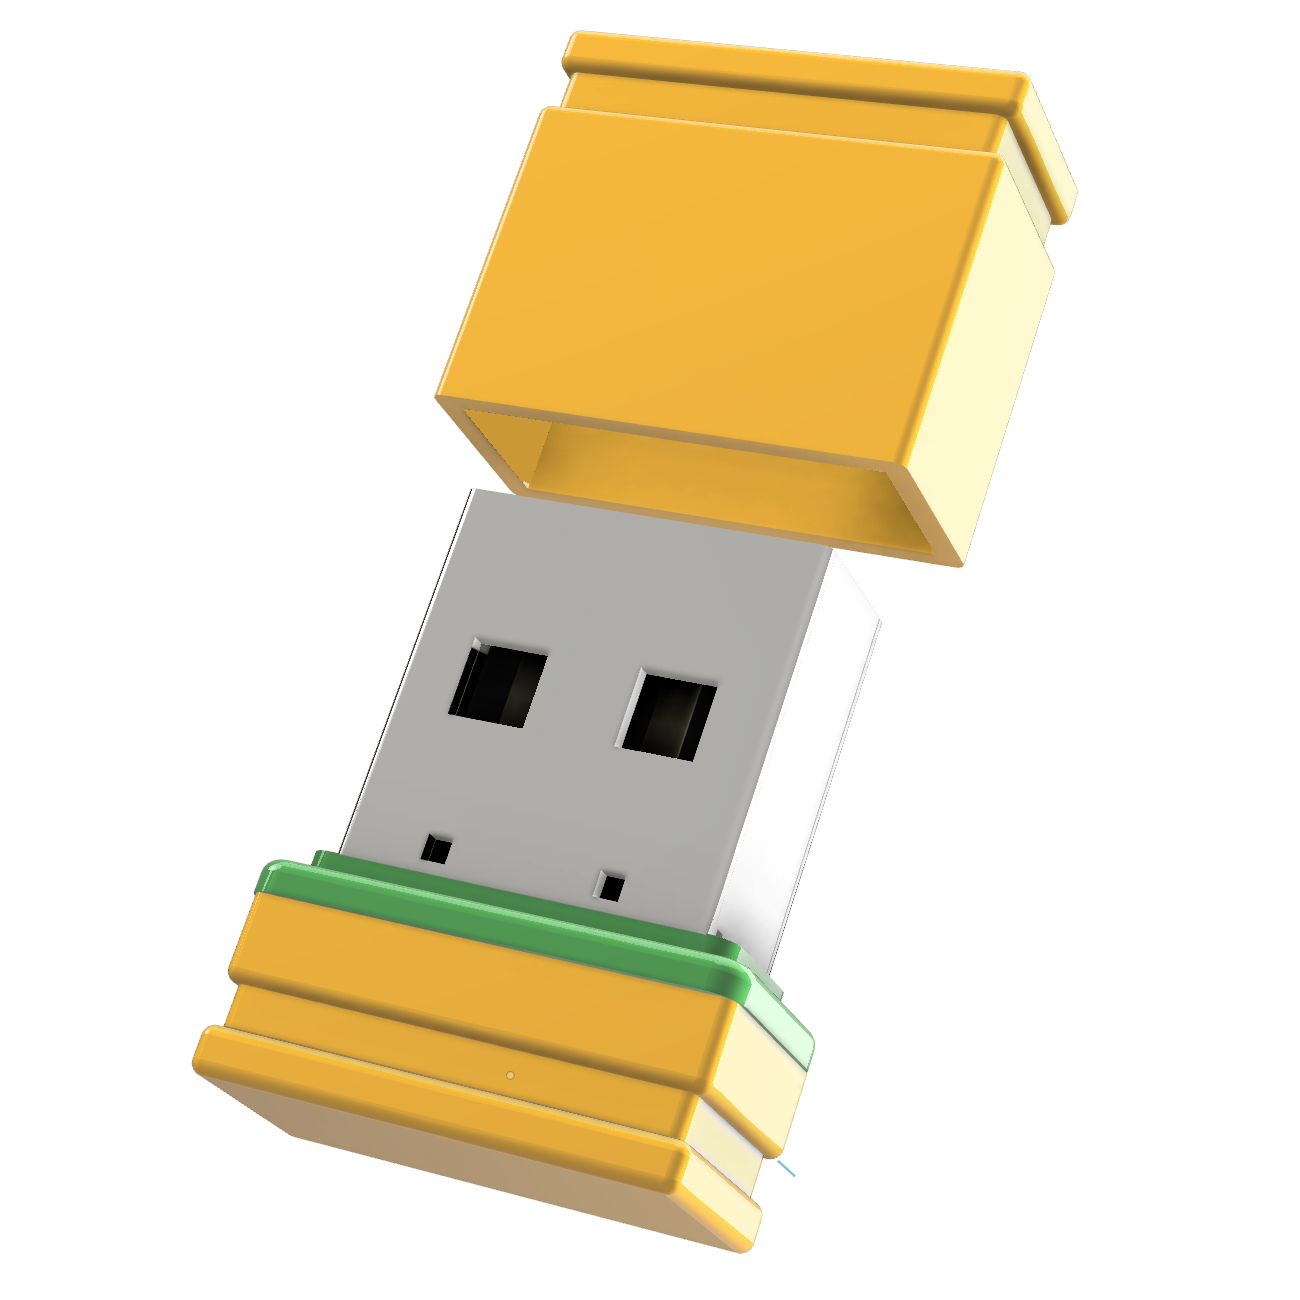 (Gelb/Grün, GERMANY GB) USB-Stick 1 USB Mini ®ULTRA P1